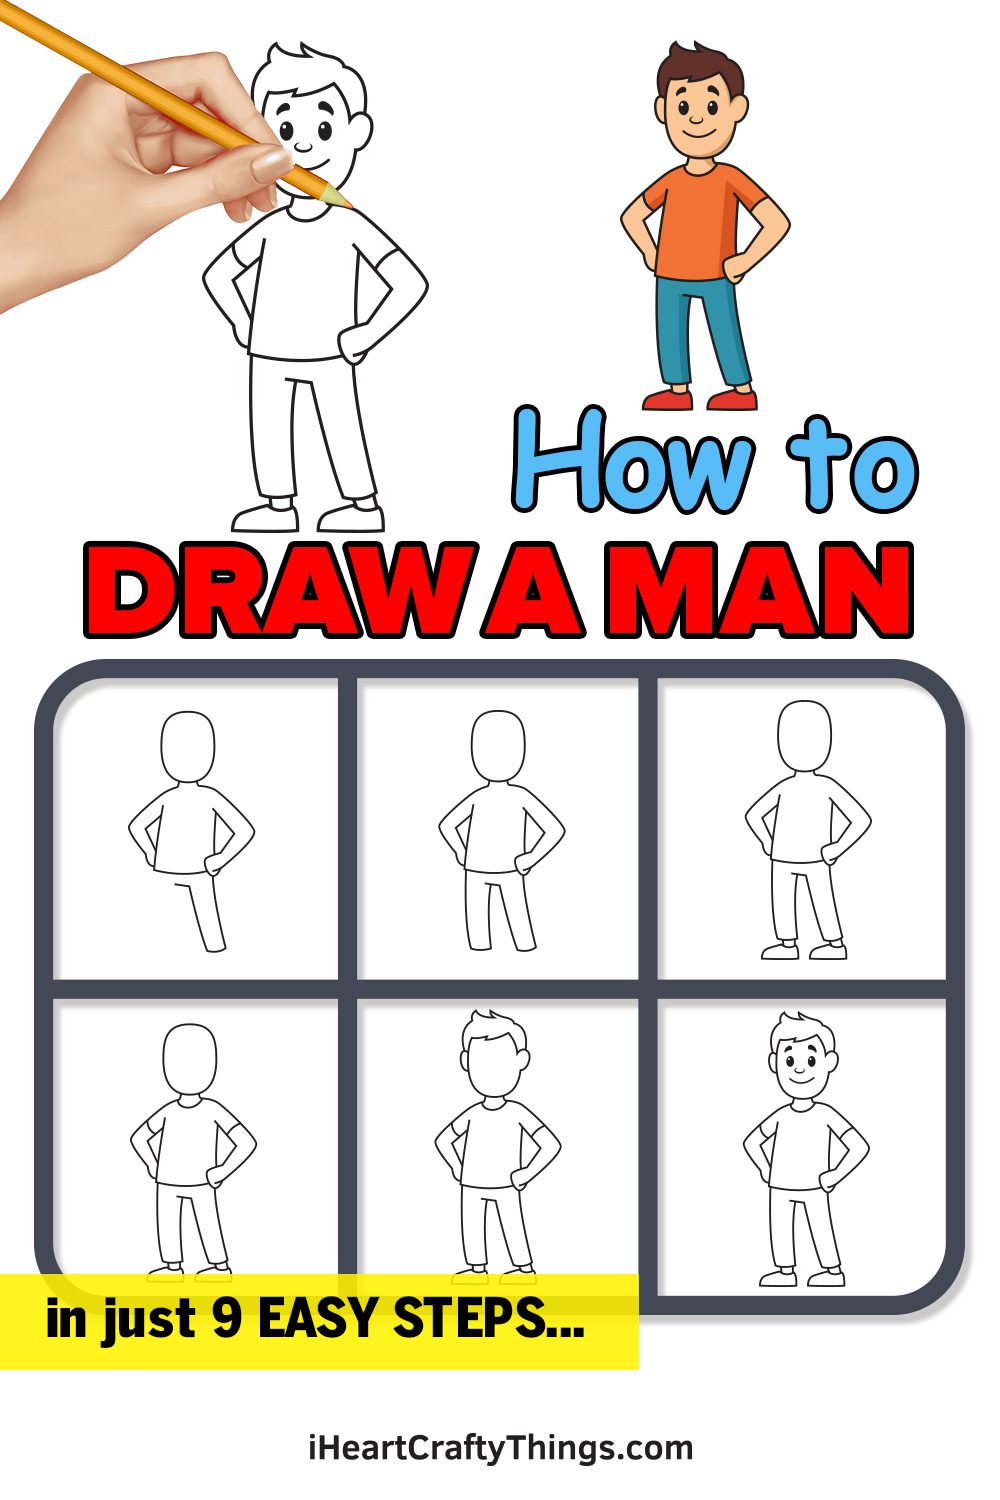 يتم عرض برنامج تعليمي لكيفية رسم الرجل.  تظهر اليد وهي ترسم المخطط التفصيلي بجوار نسخة نهائية ملونة. 